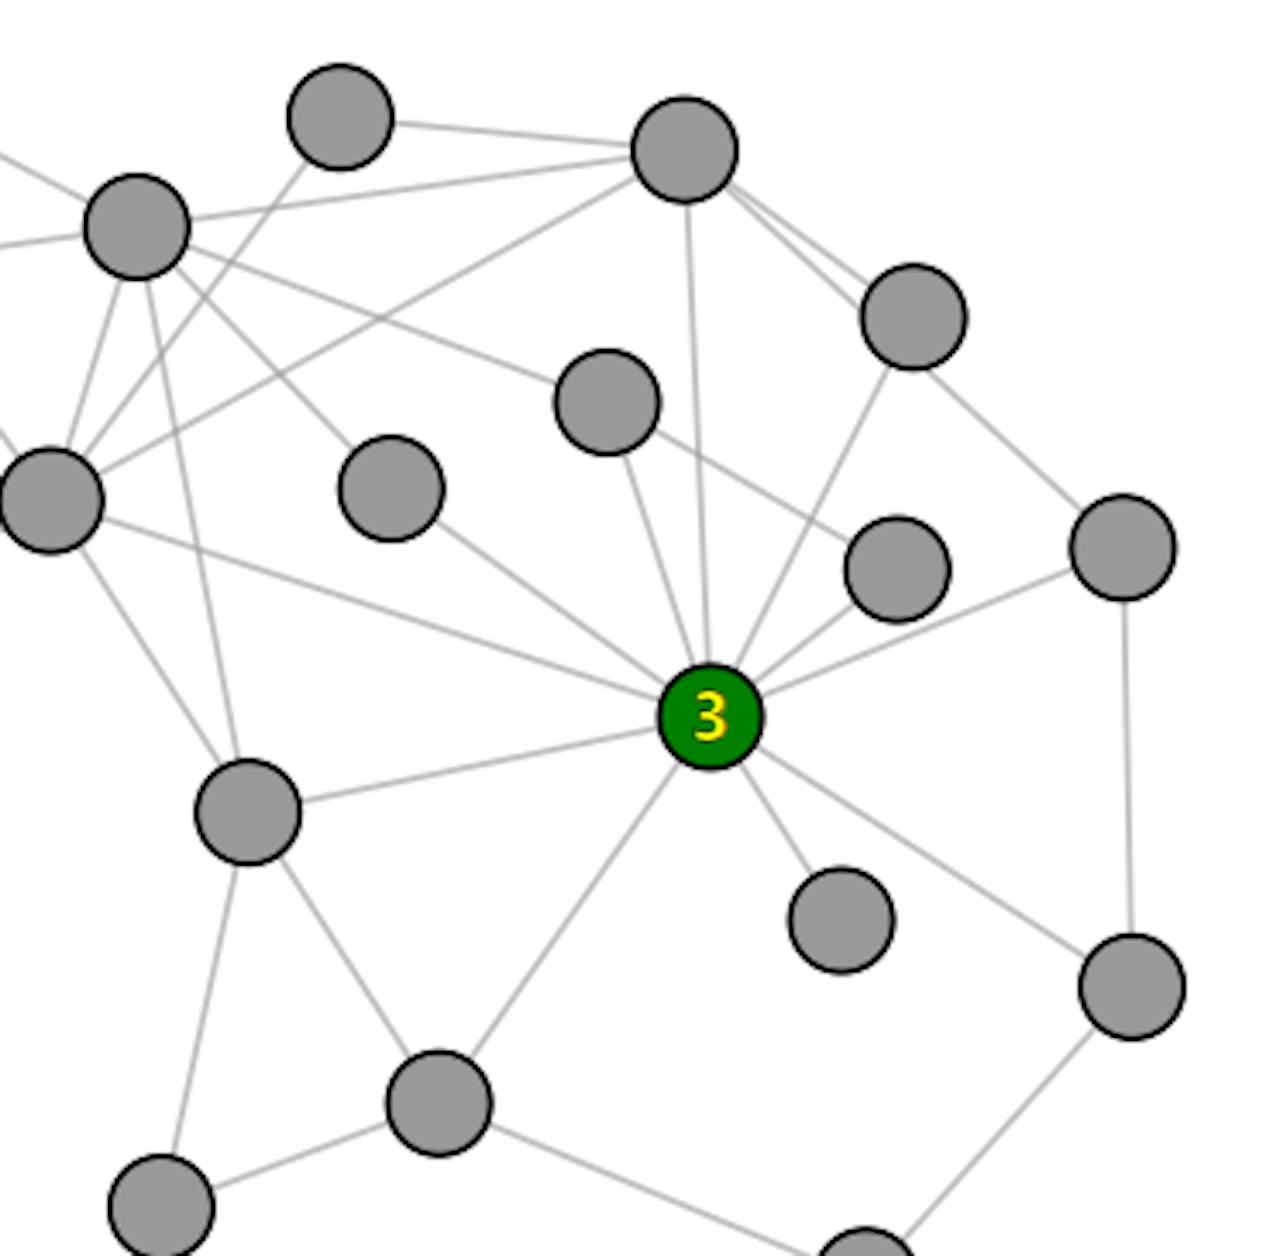 Een netwerk met meerdere punten. In het enige groene punt staat het getal 3.